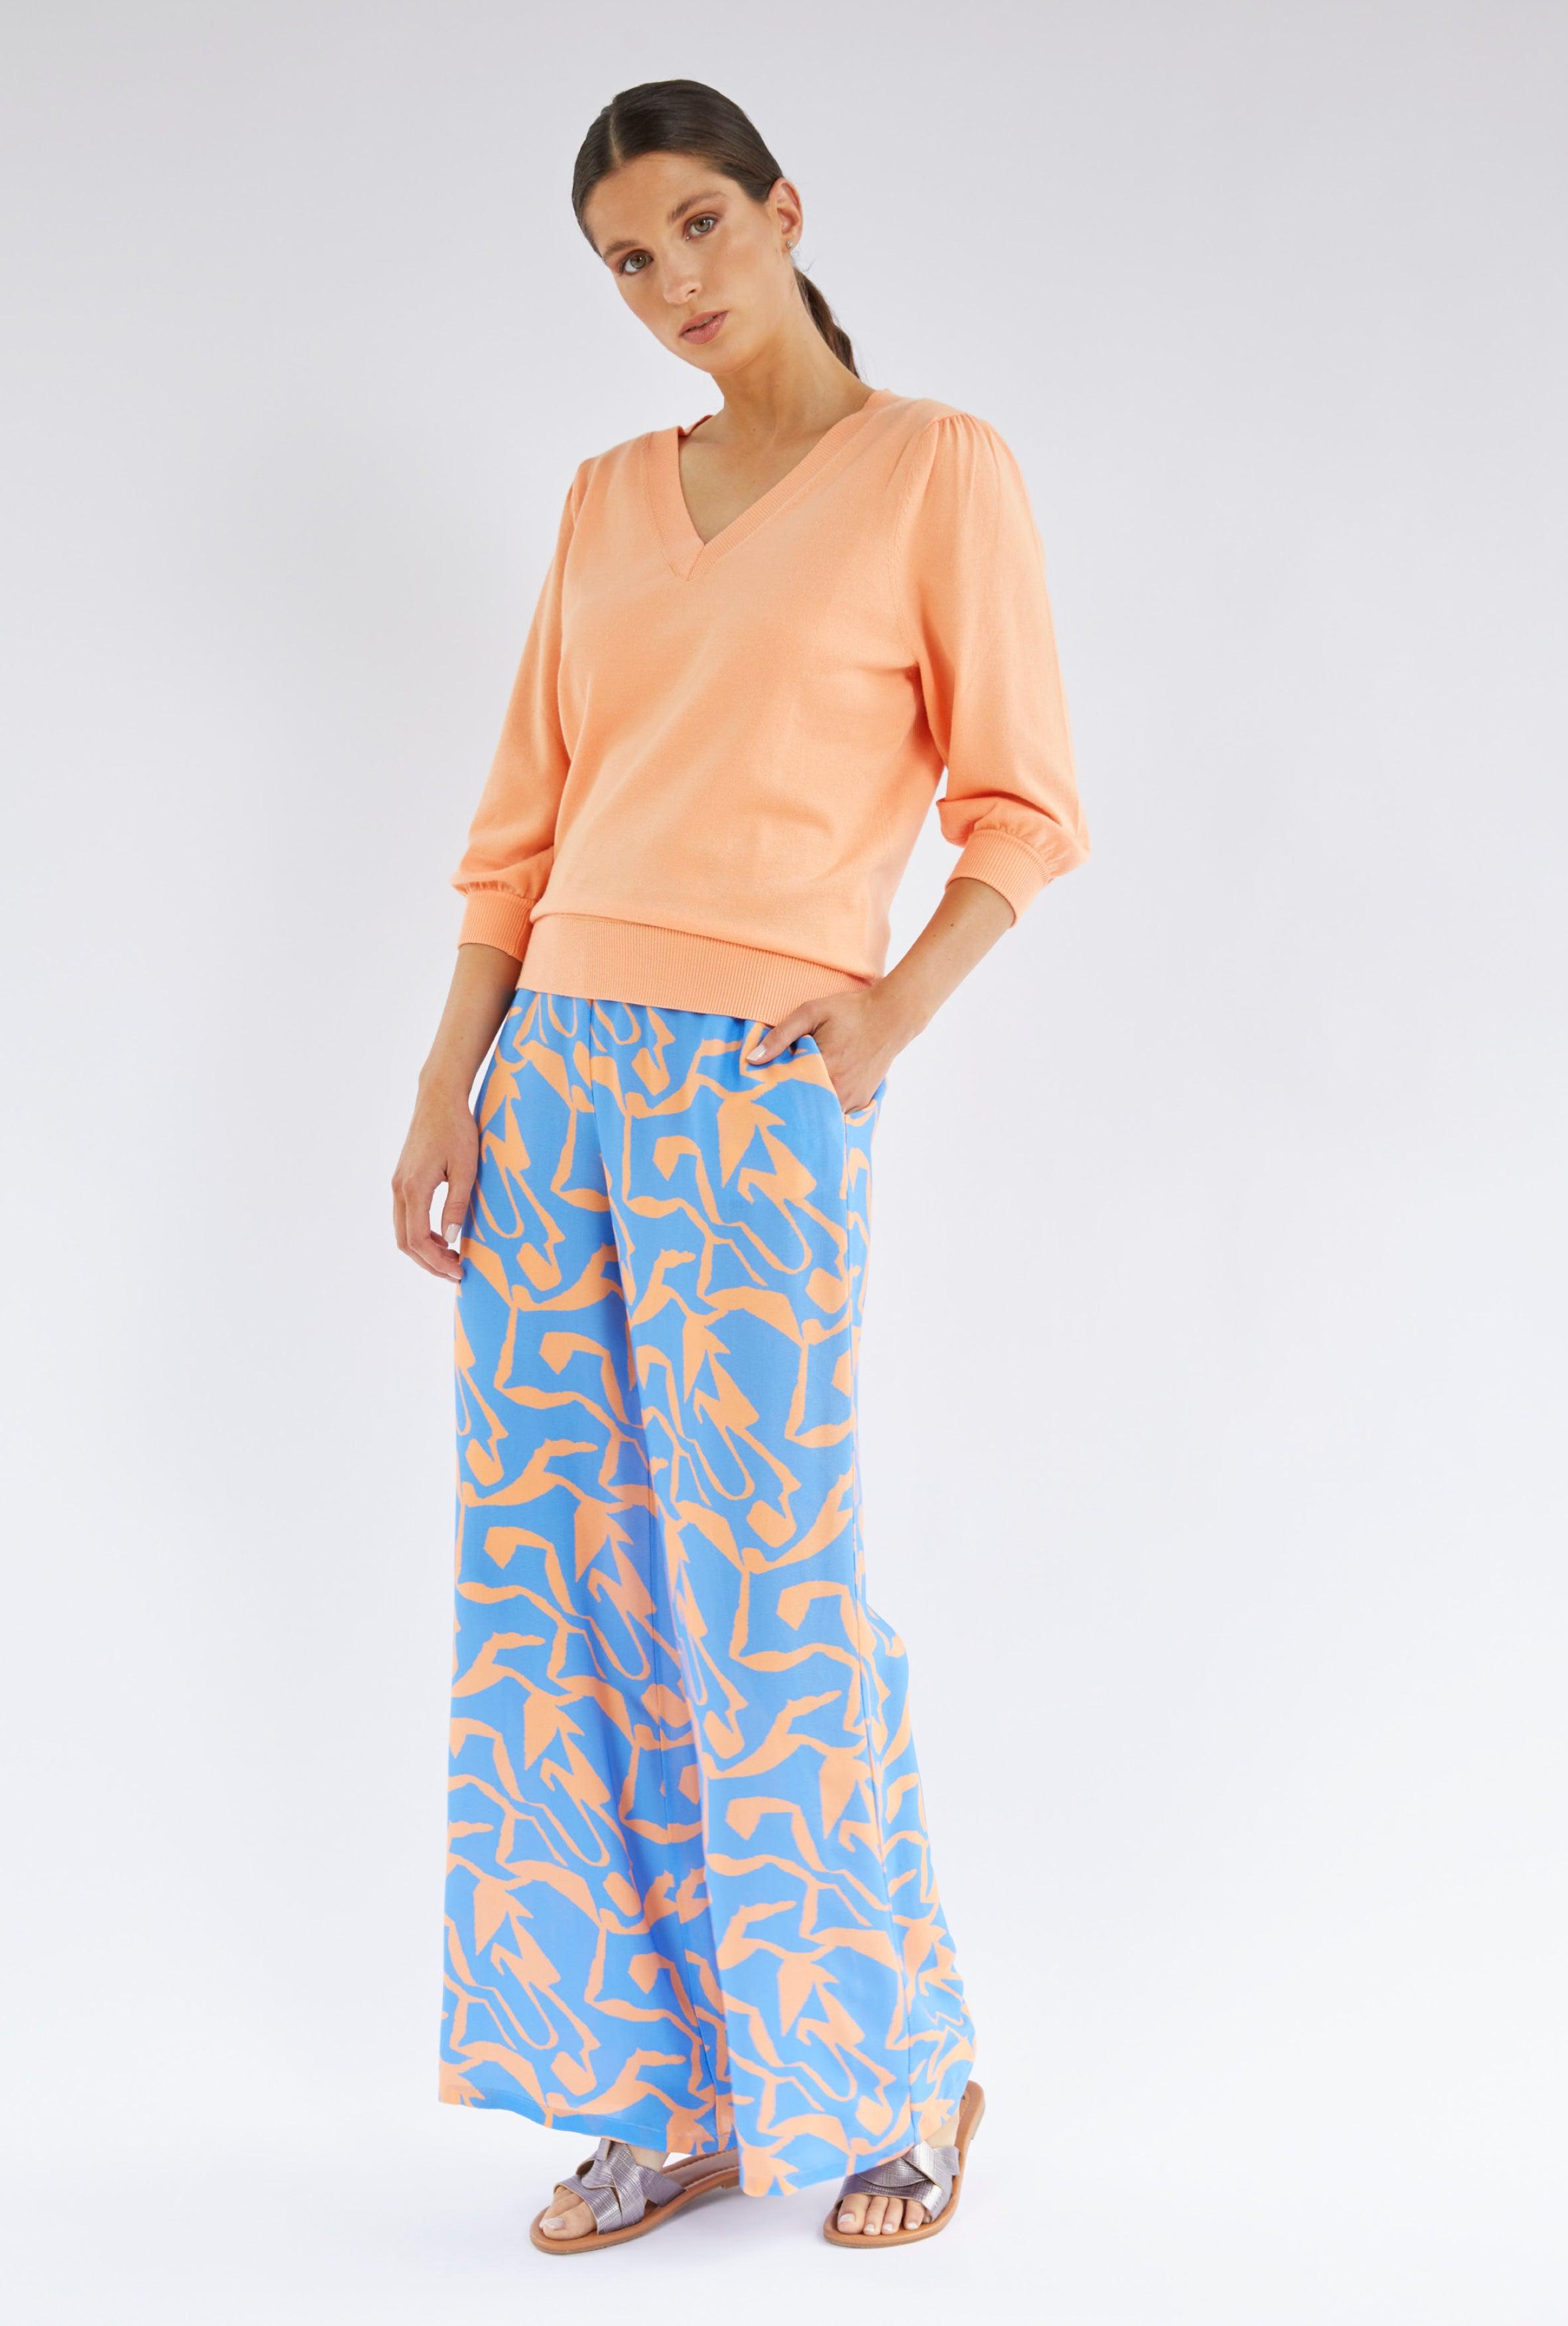 Broek Oranje Blue Iv ( Moya/375 ) - Delaere Womenswear